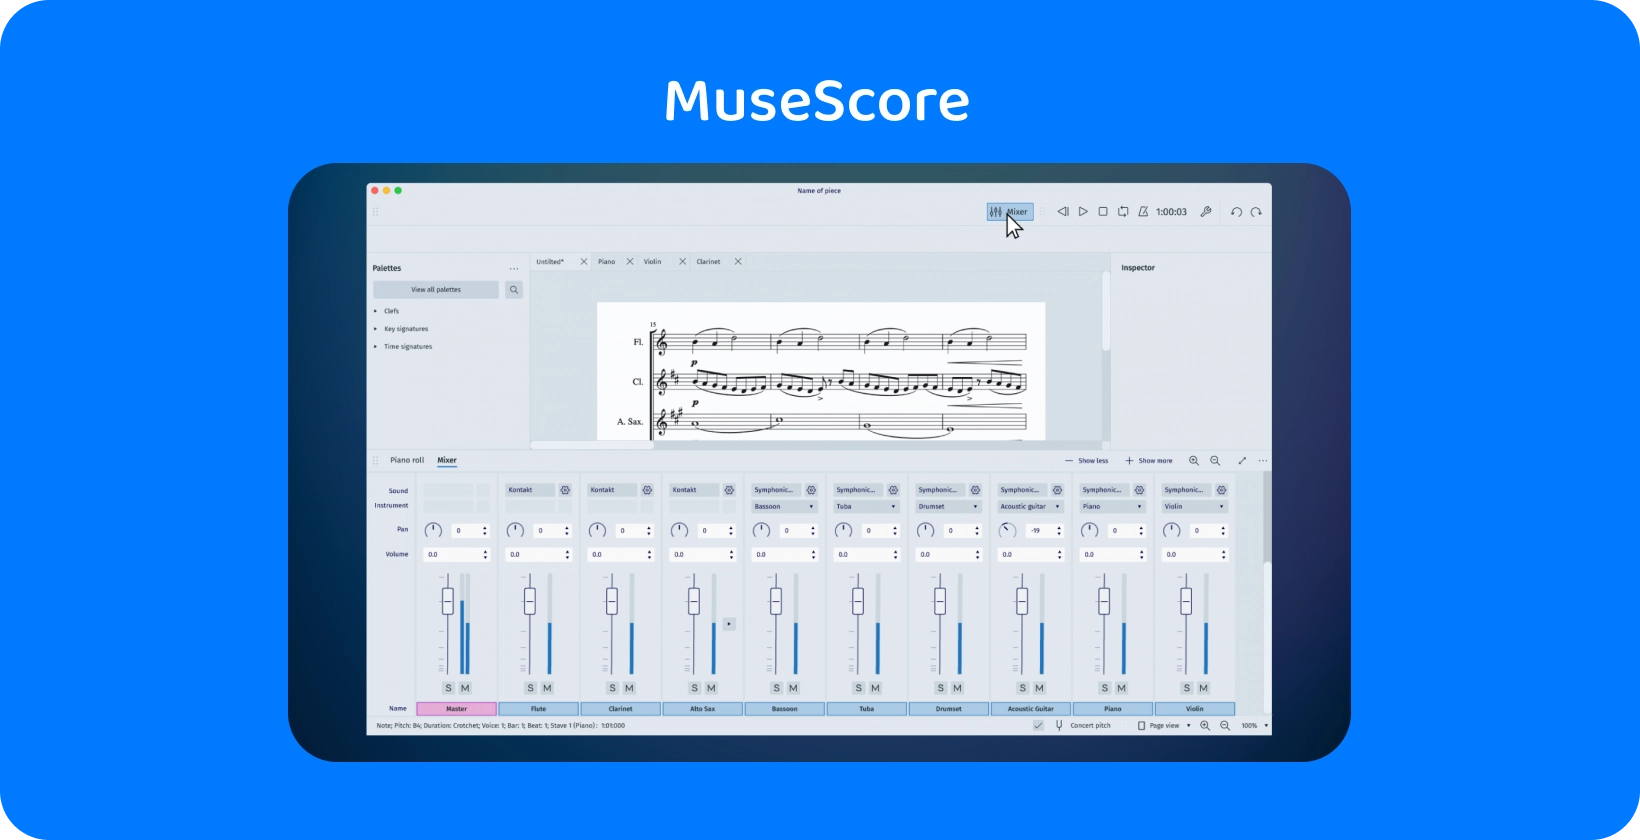 MuseScore rozhranie predstavujúce mixážny nástroj na prepis zvuku, ktorý je nevyhnutný pre tvorcov hudby.